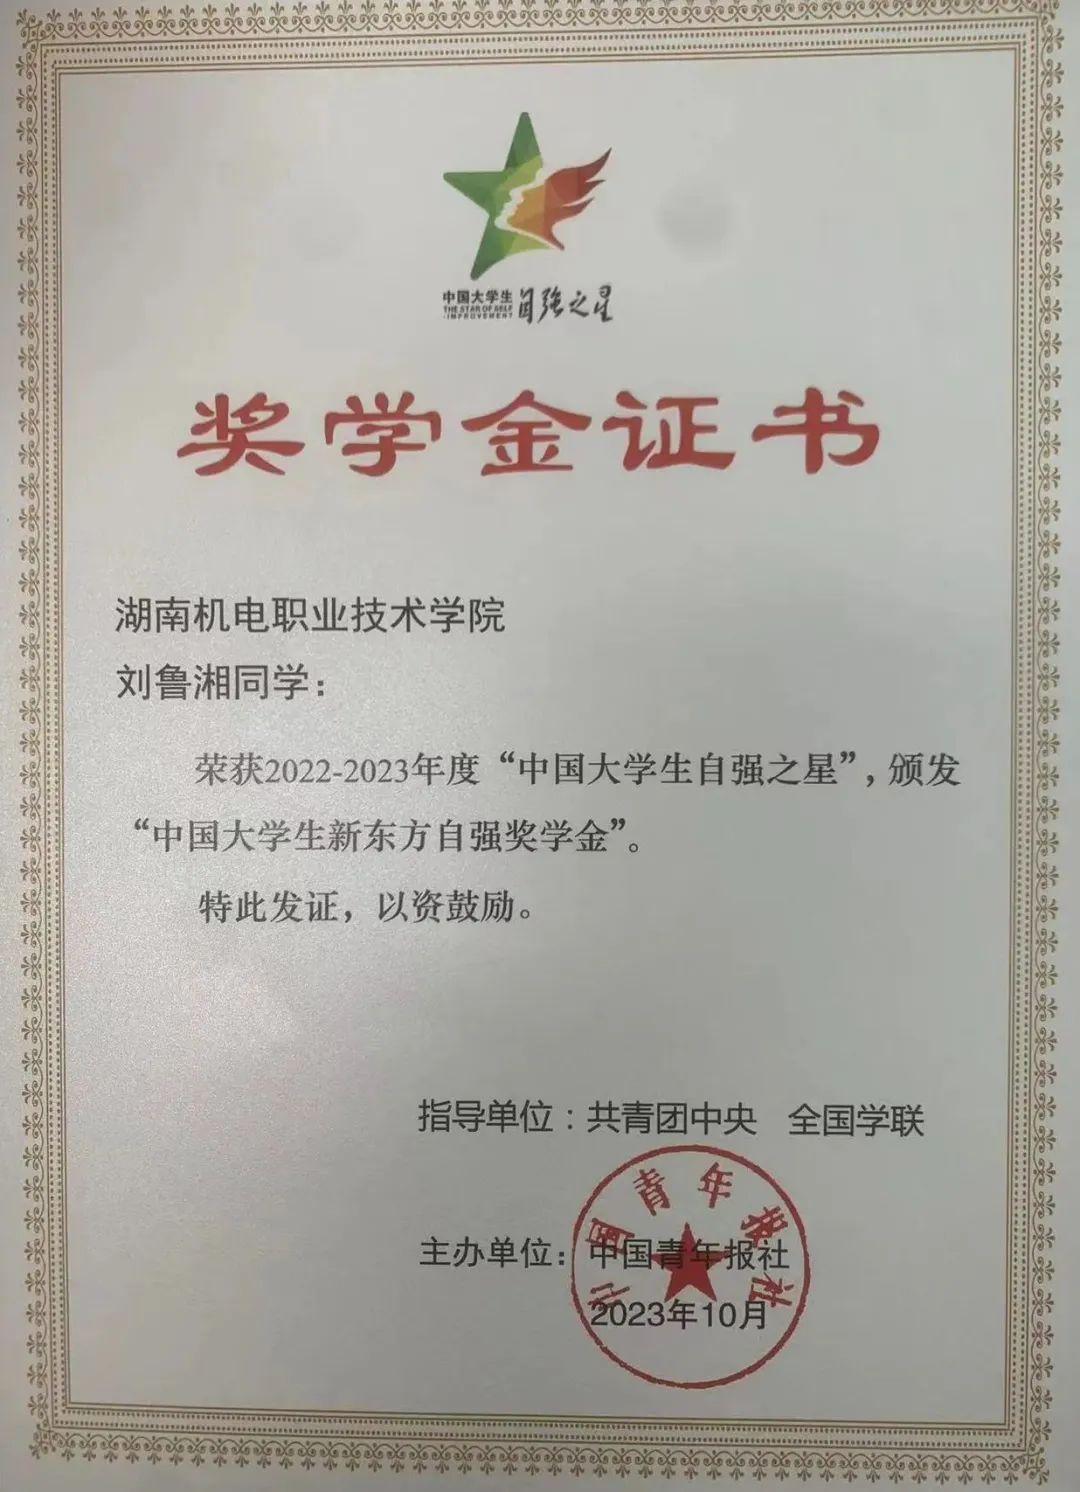 我院学子刘鲁湘荣获2022-2023年度“中国大学生自强之星”荣誉称号